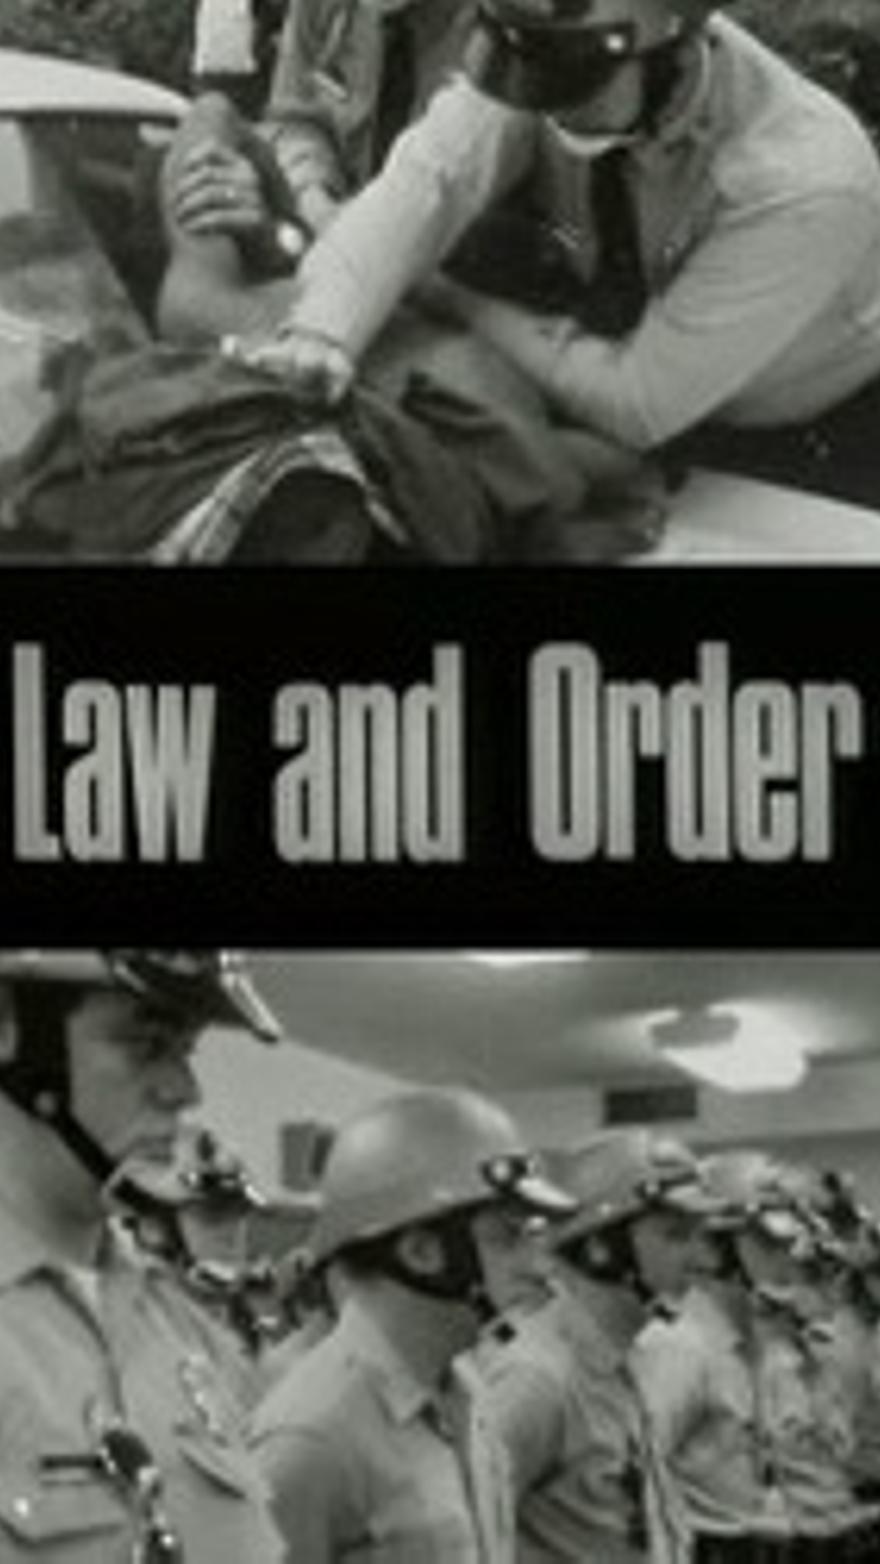 Llei i ordre